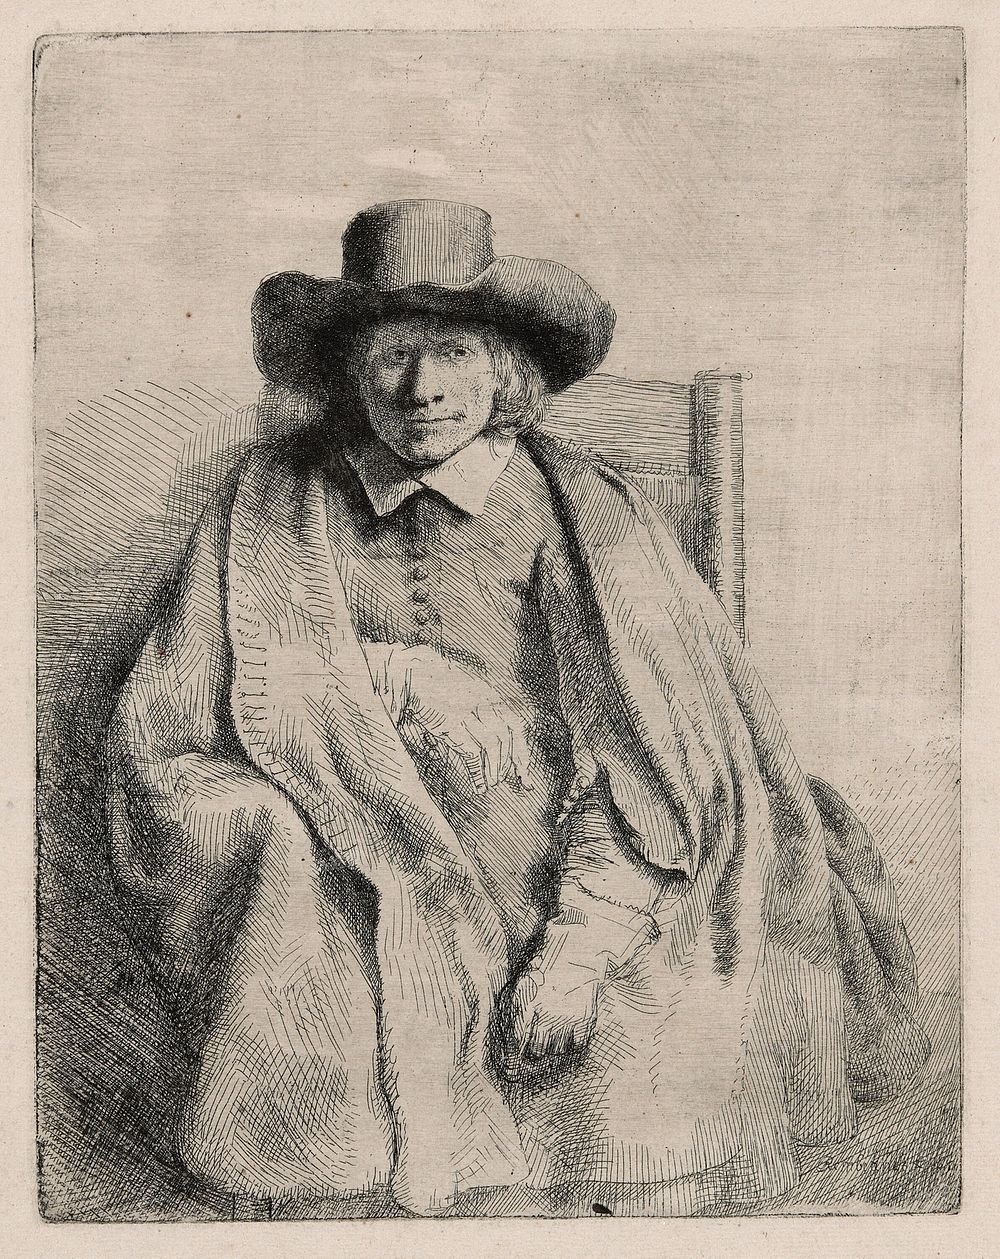 Clement de Jonghe, Printseller by Rembrandt van Rijn